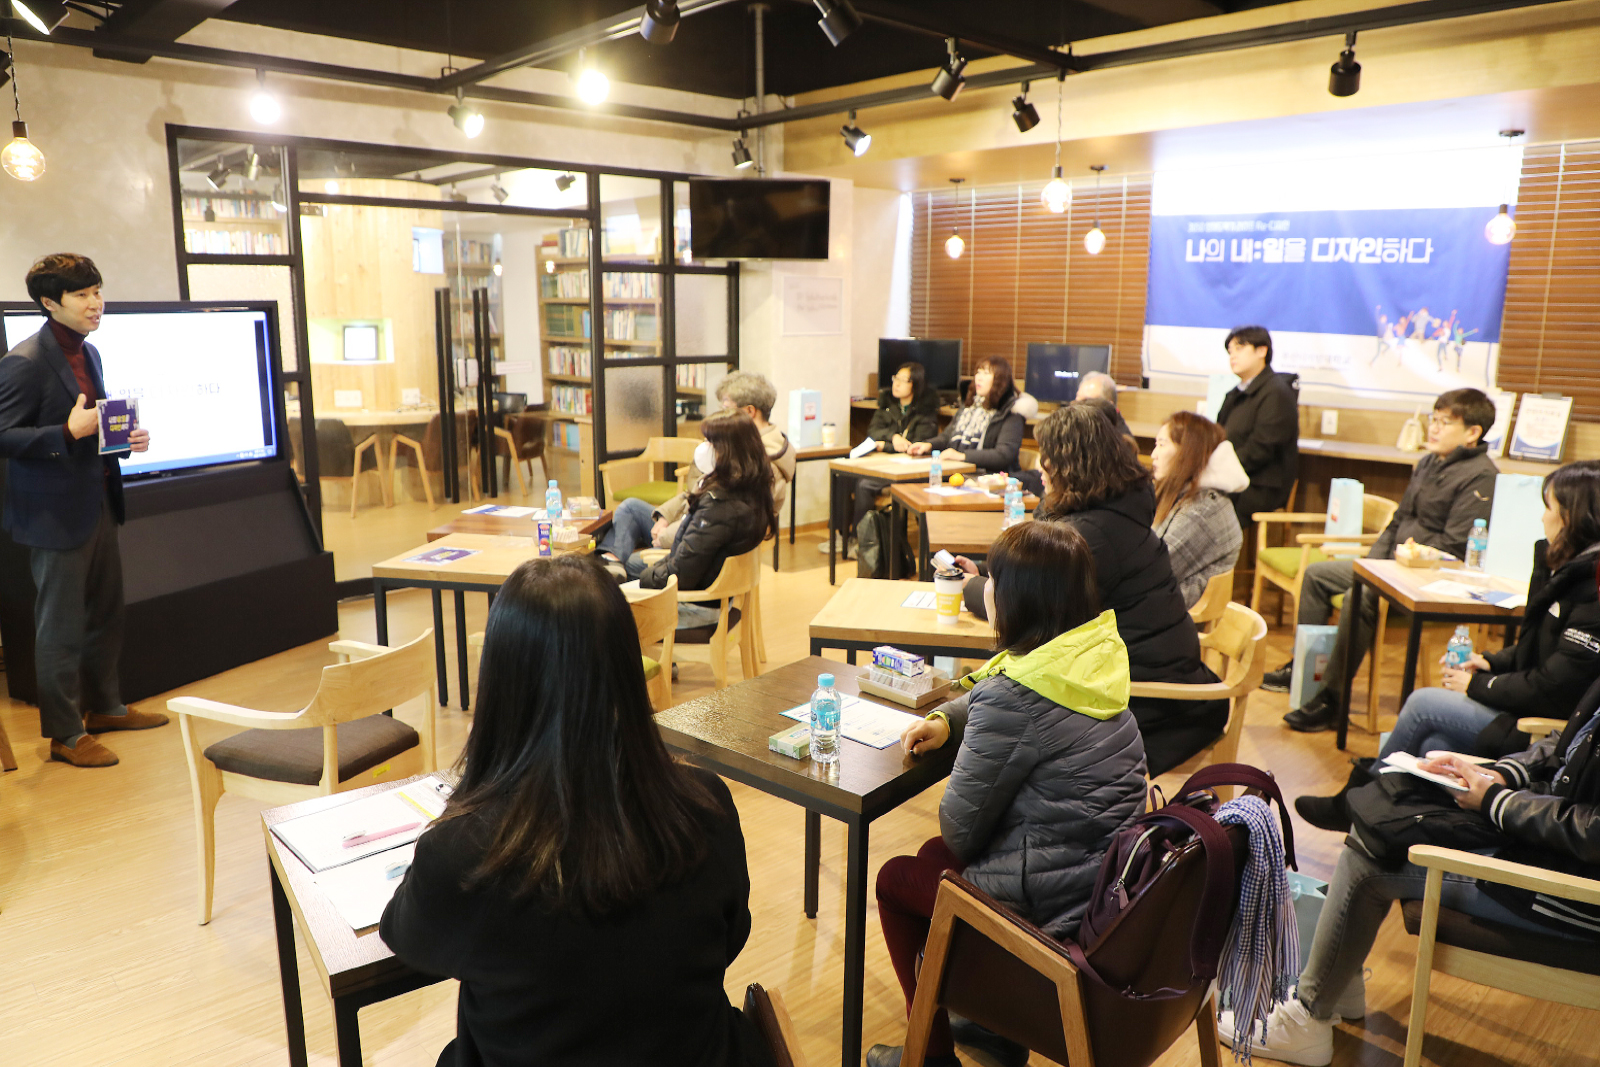 K-MOOC 신규묶음강좌 오픈기념 ‘토크콘서트’ 개최